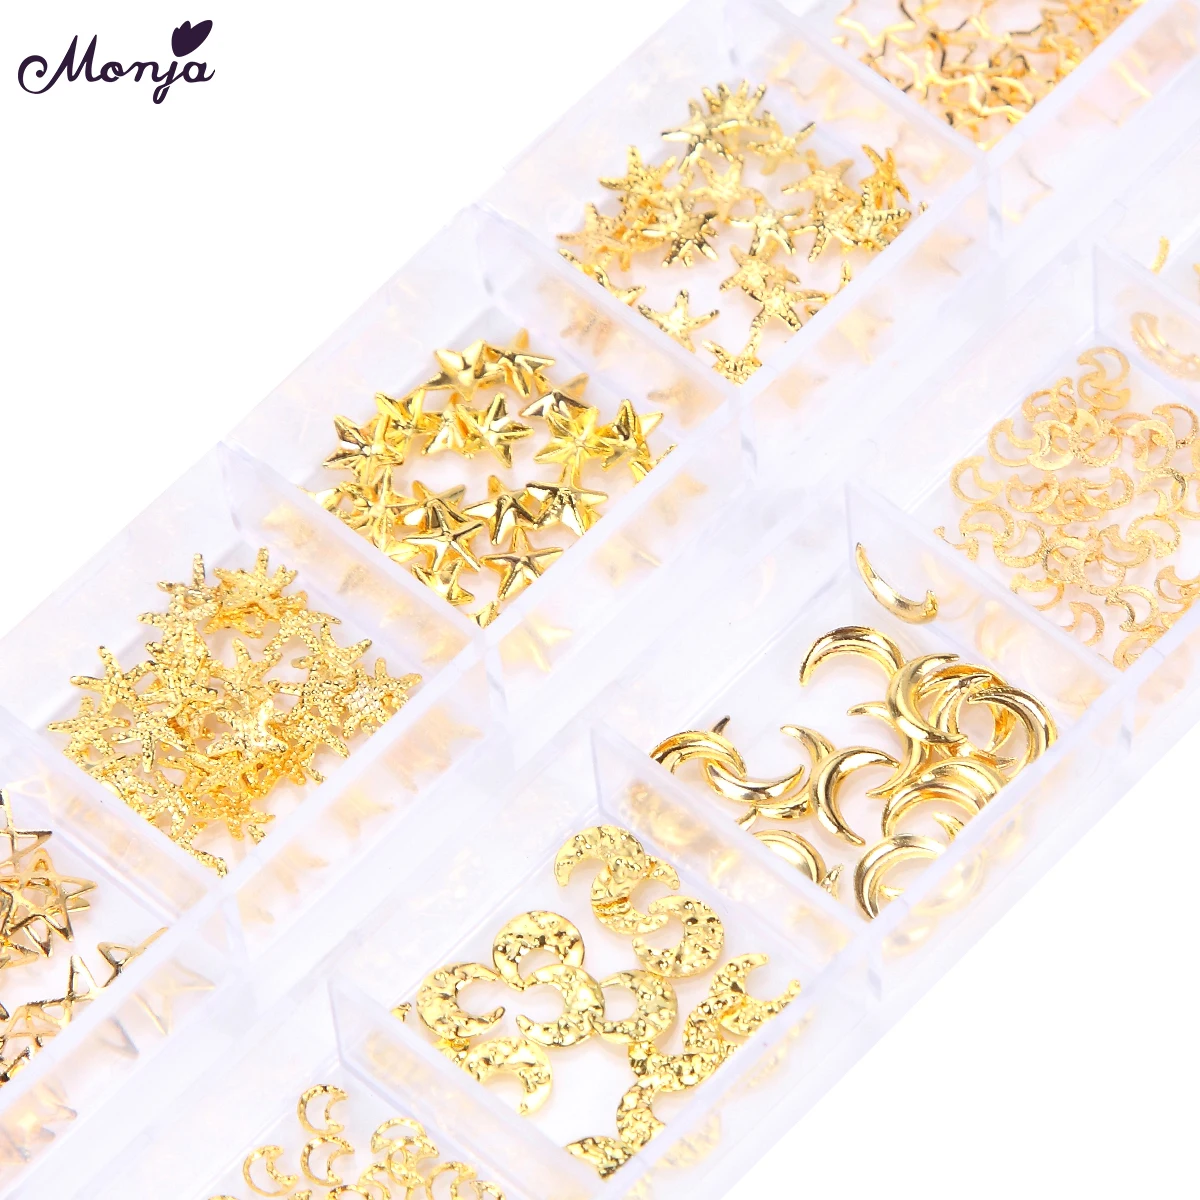 Monja 12 Сетки смешанный стиль дизайн ногтей Луна Звезда золотые металлические заклепки 3D DIY Шарм украшения аксессуары